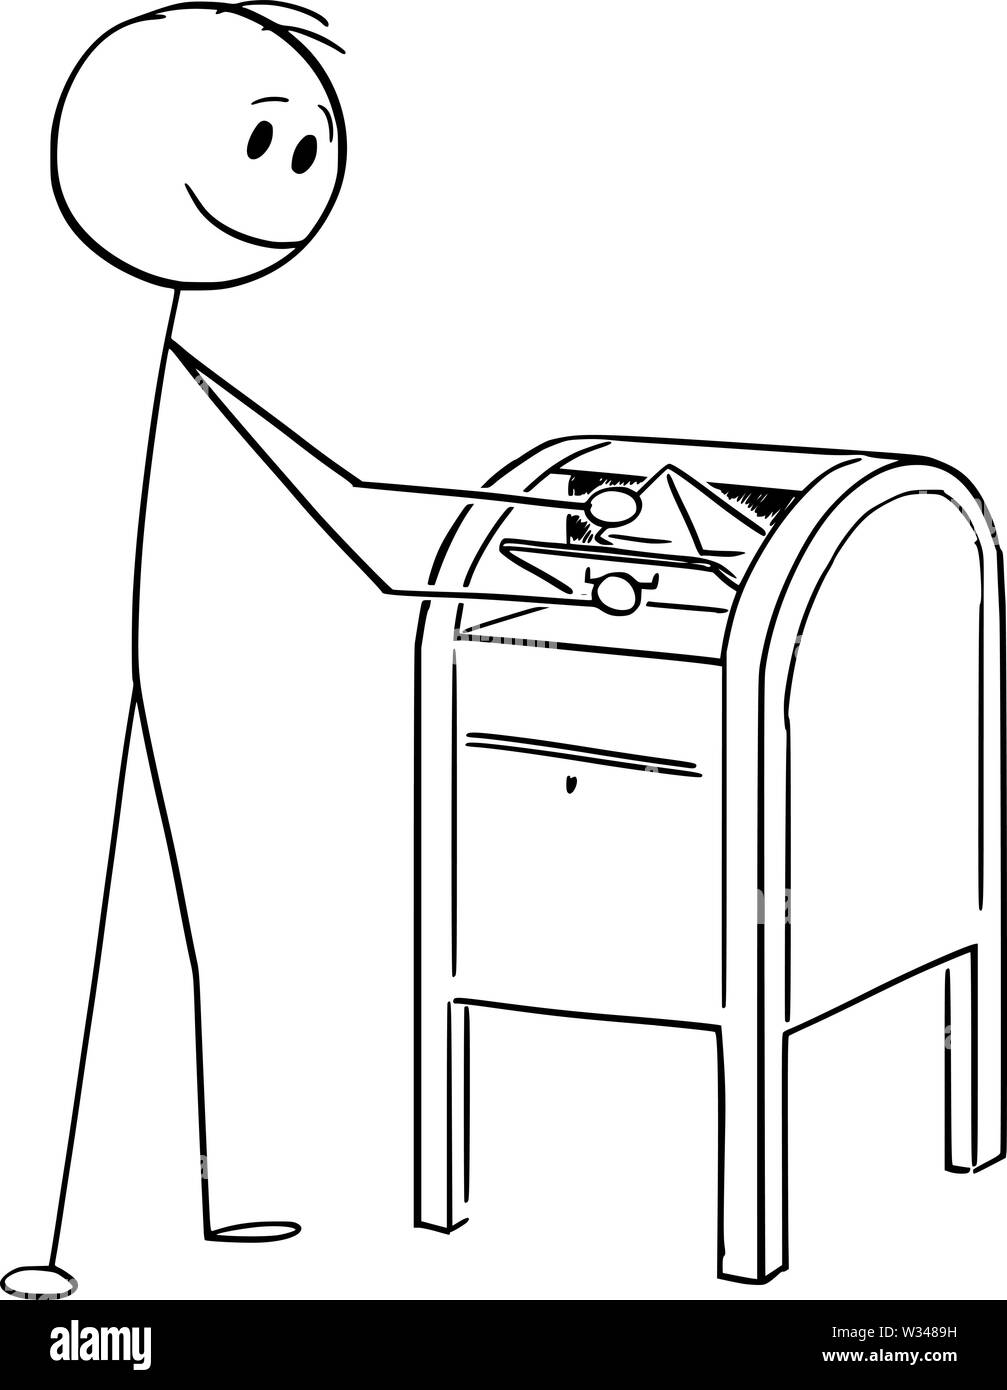 Vector cartoon stick figure dessin illustration conceptuelle de l'homme tomber lettre ou l'enveloppe dans la boîte de courrier électronique ou postal. Illustration de Vecteur